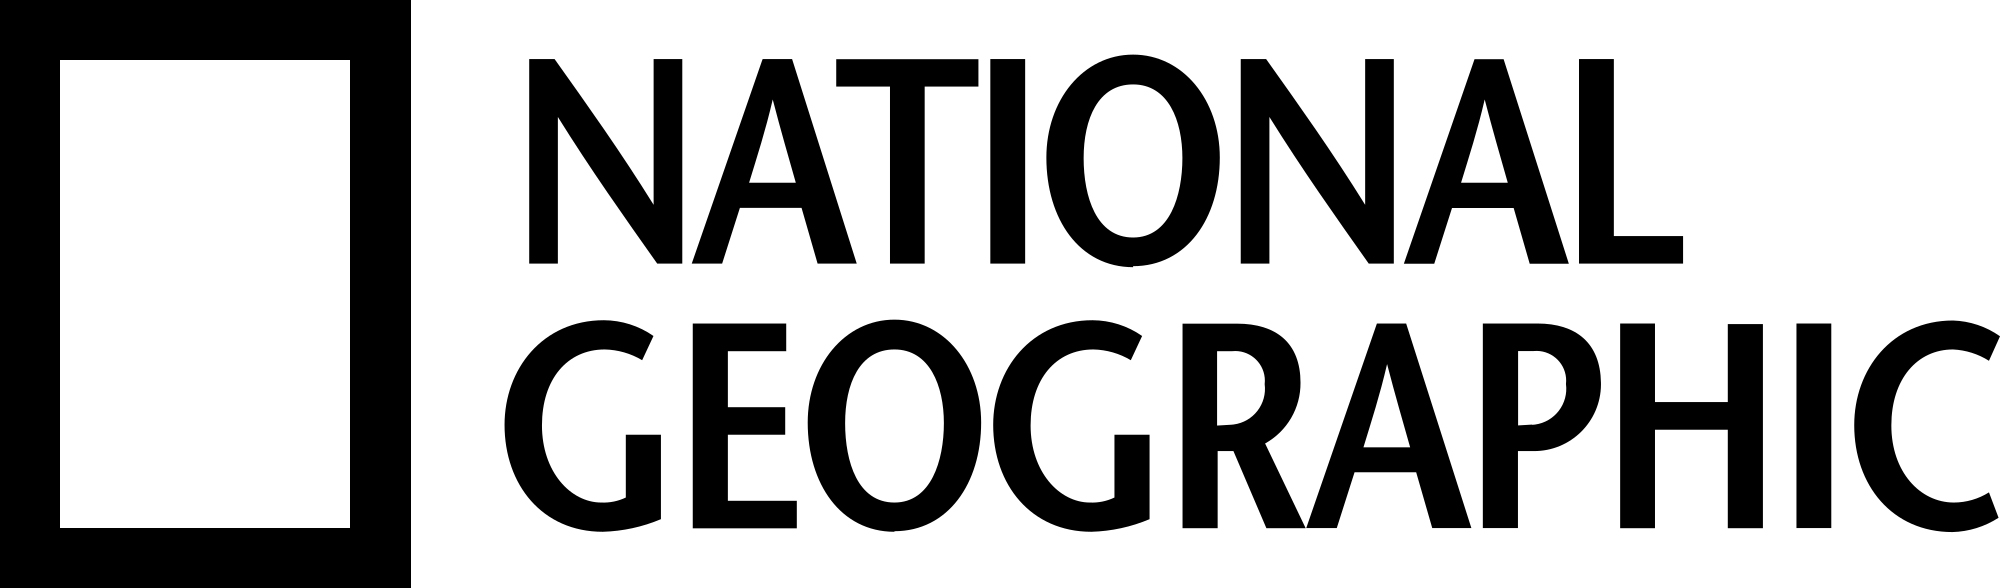 NatGeo Logo.jpg